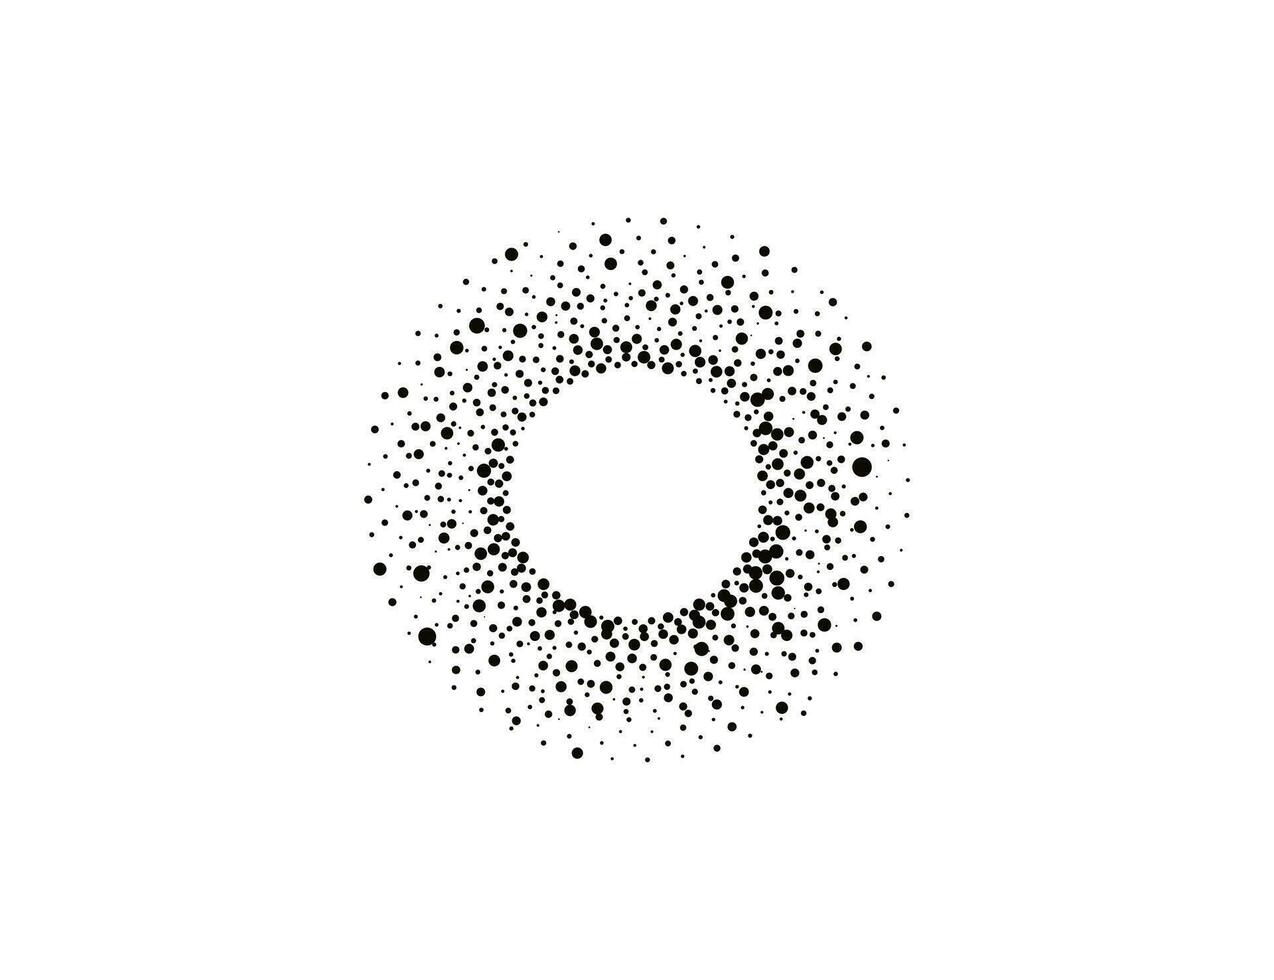 meio-tom pontos dentro círculo forma, logotipo. vetor ilustração.